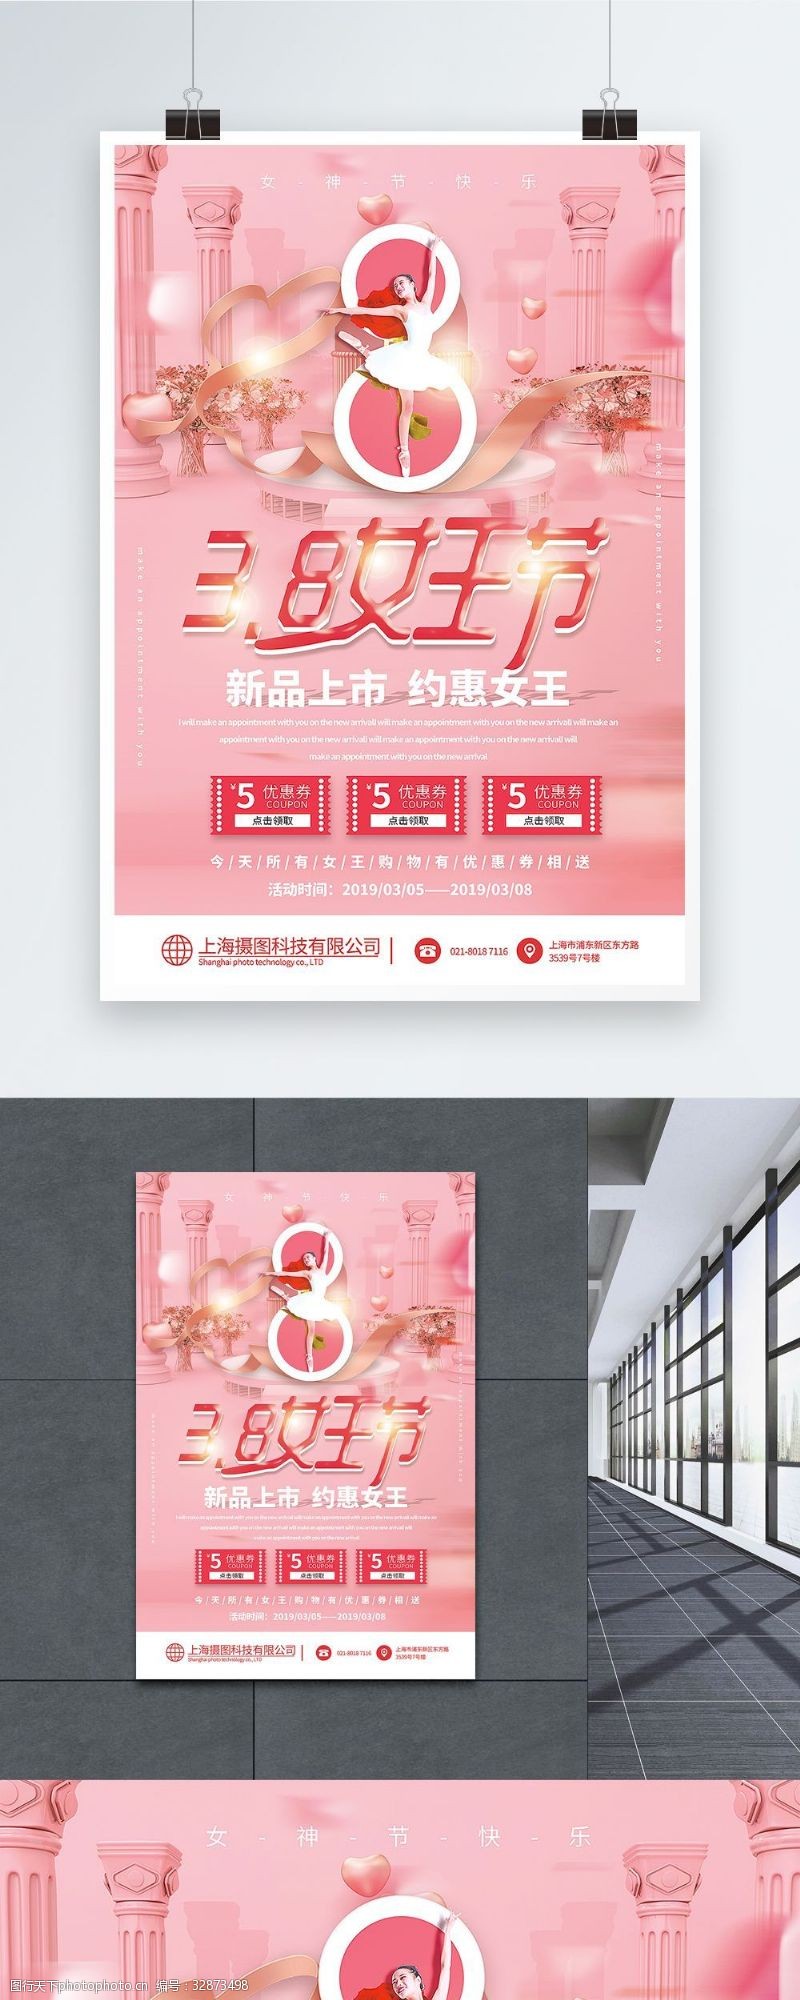 妇女节折扣粉色唯美大气3.8女王节促销海报